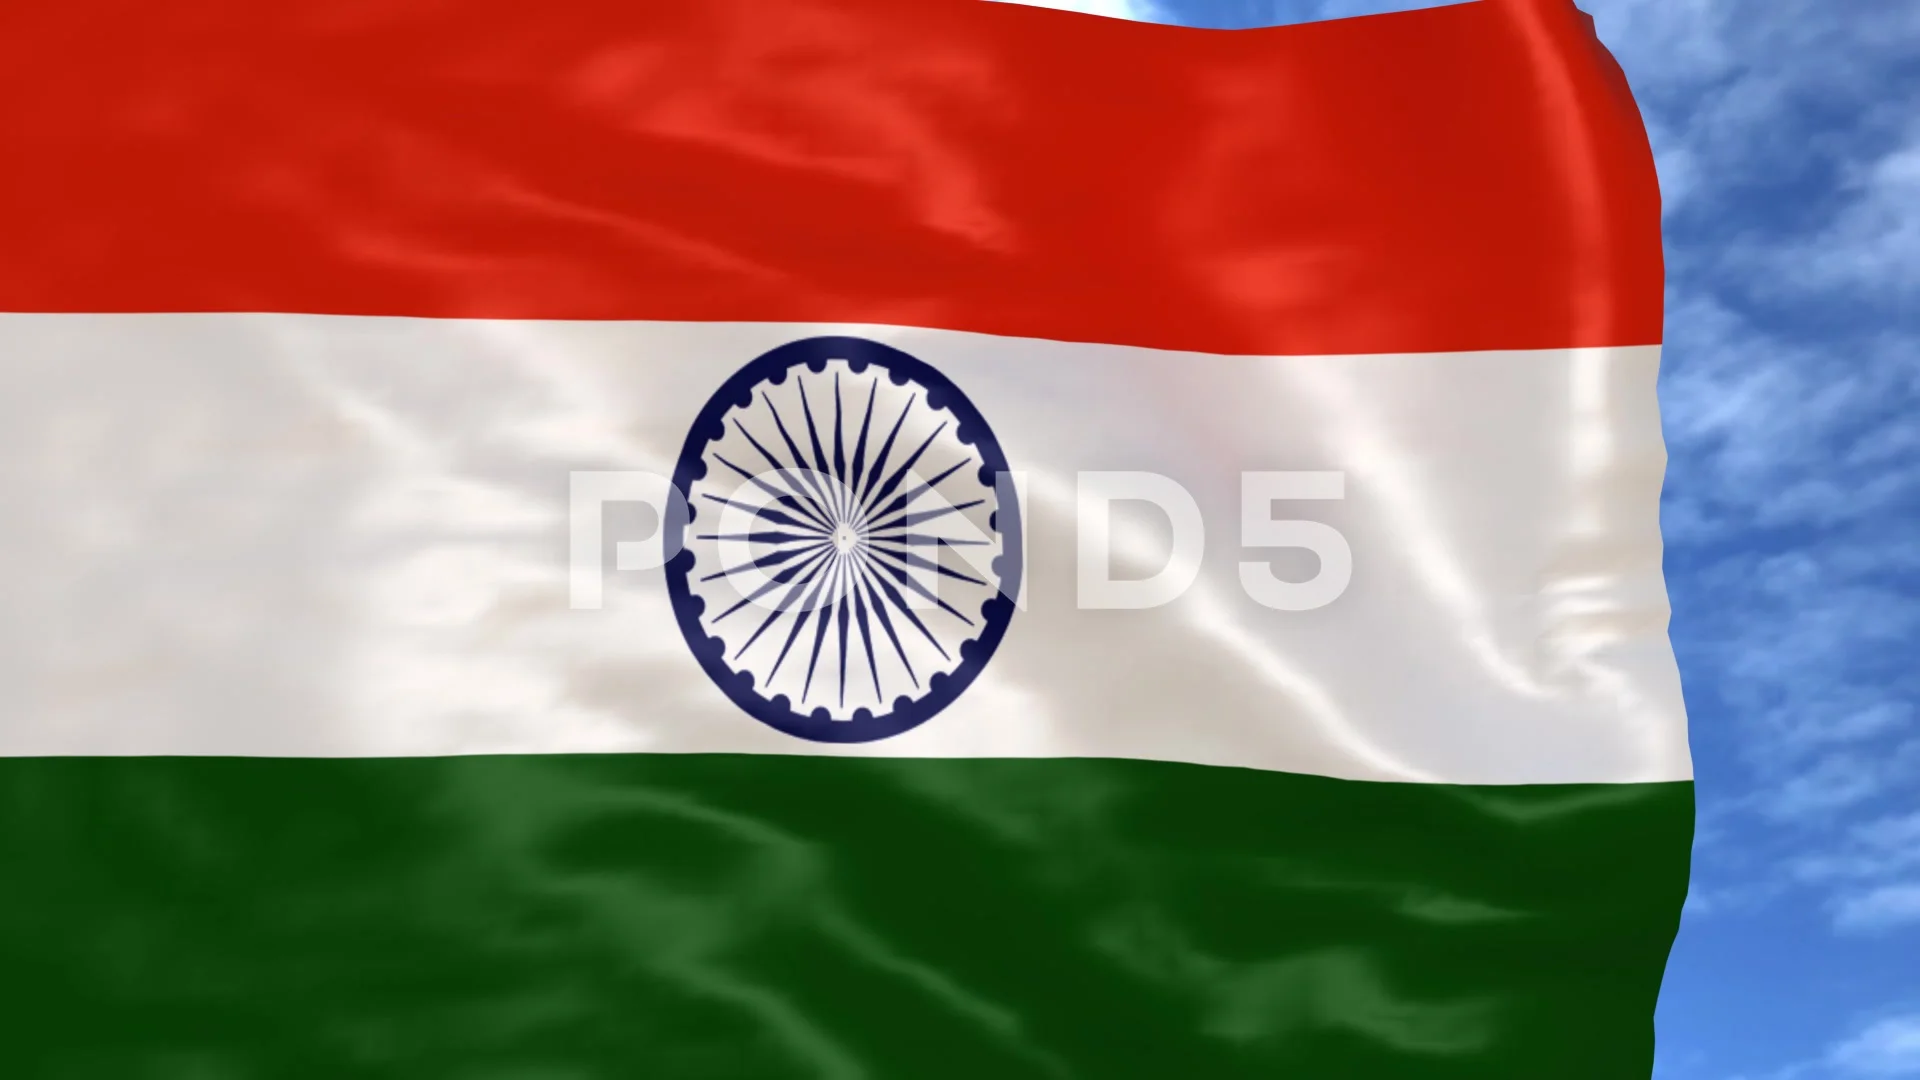 Cờ Ấn Độ tung bay: Lại một lần nữa, chúng ta có thể cảm nhận được niềm tự hào và tình yêu đối với quốc gia của mình thông qua hình ảnh cờ Ấn Độ tung bay. Hãy ngắm nhìn con cờ hoa sen trên nền trắng, biểu tượng cho sự đồng lòng của toàn dân. Bạn sẽ cảm thấy tự hào khi nhìn thấy hình ảnh này và chia sẻ niềm tự hào của mình với mọi người.